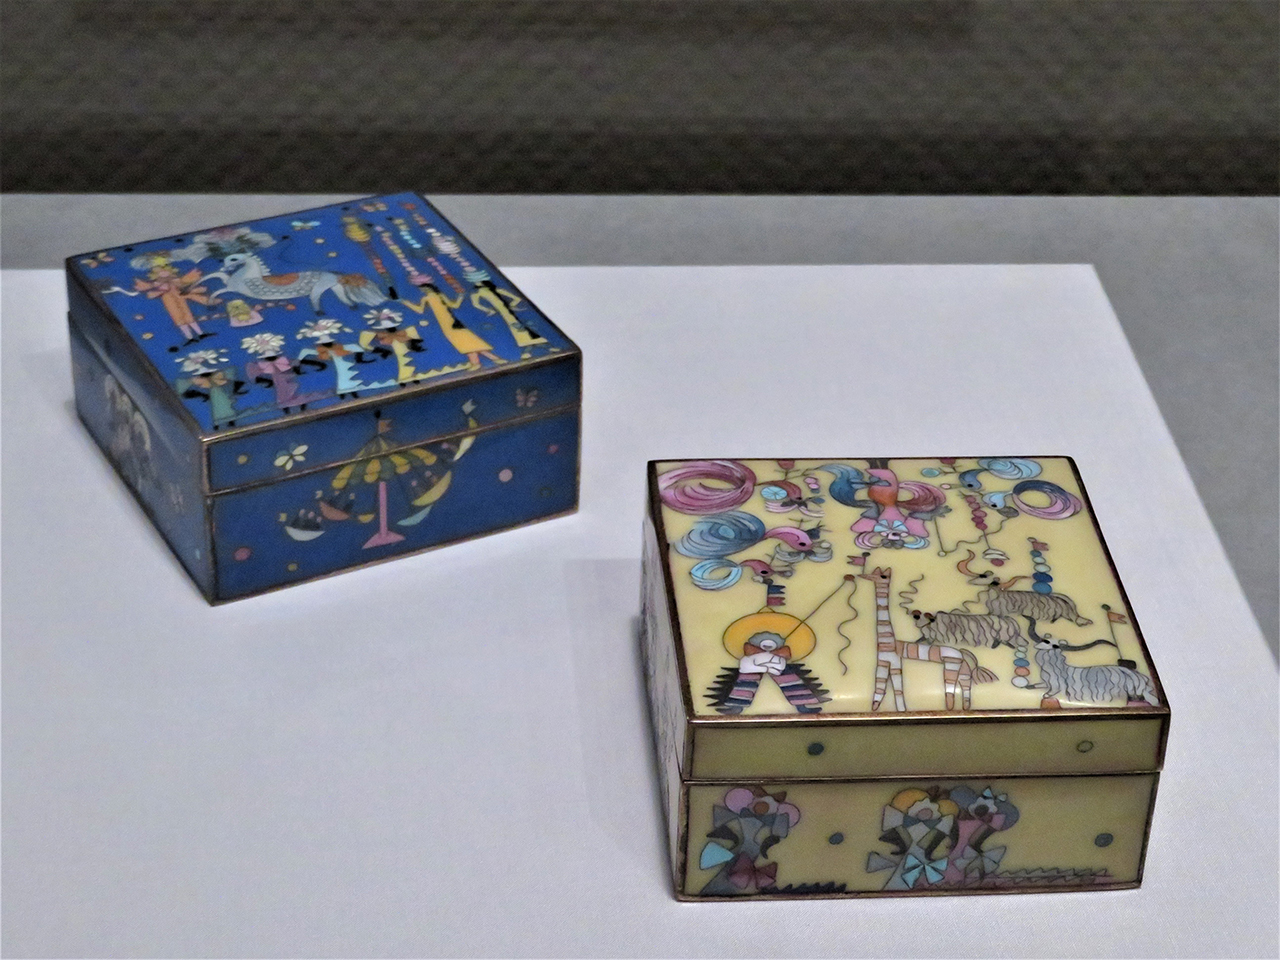 左から、上野リチ・リックス《七宝宝飾：馬のサーカスⅠ》《七宝宝飾：馬のサーカスⅡ》、共に1950年頃[再制作1987年] 、京都国立近代美術館